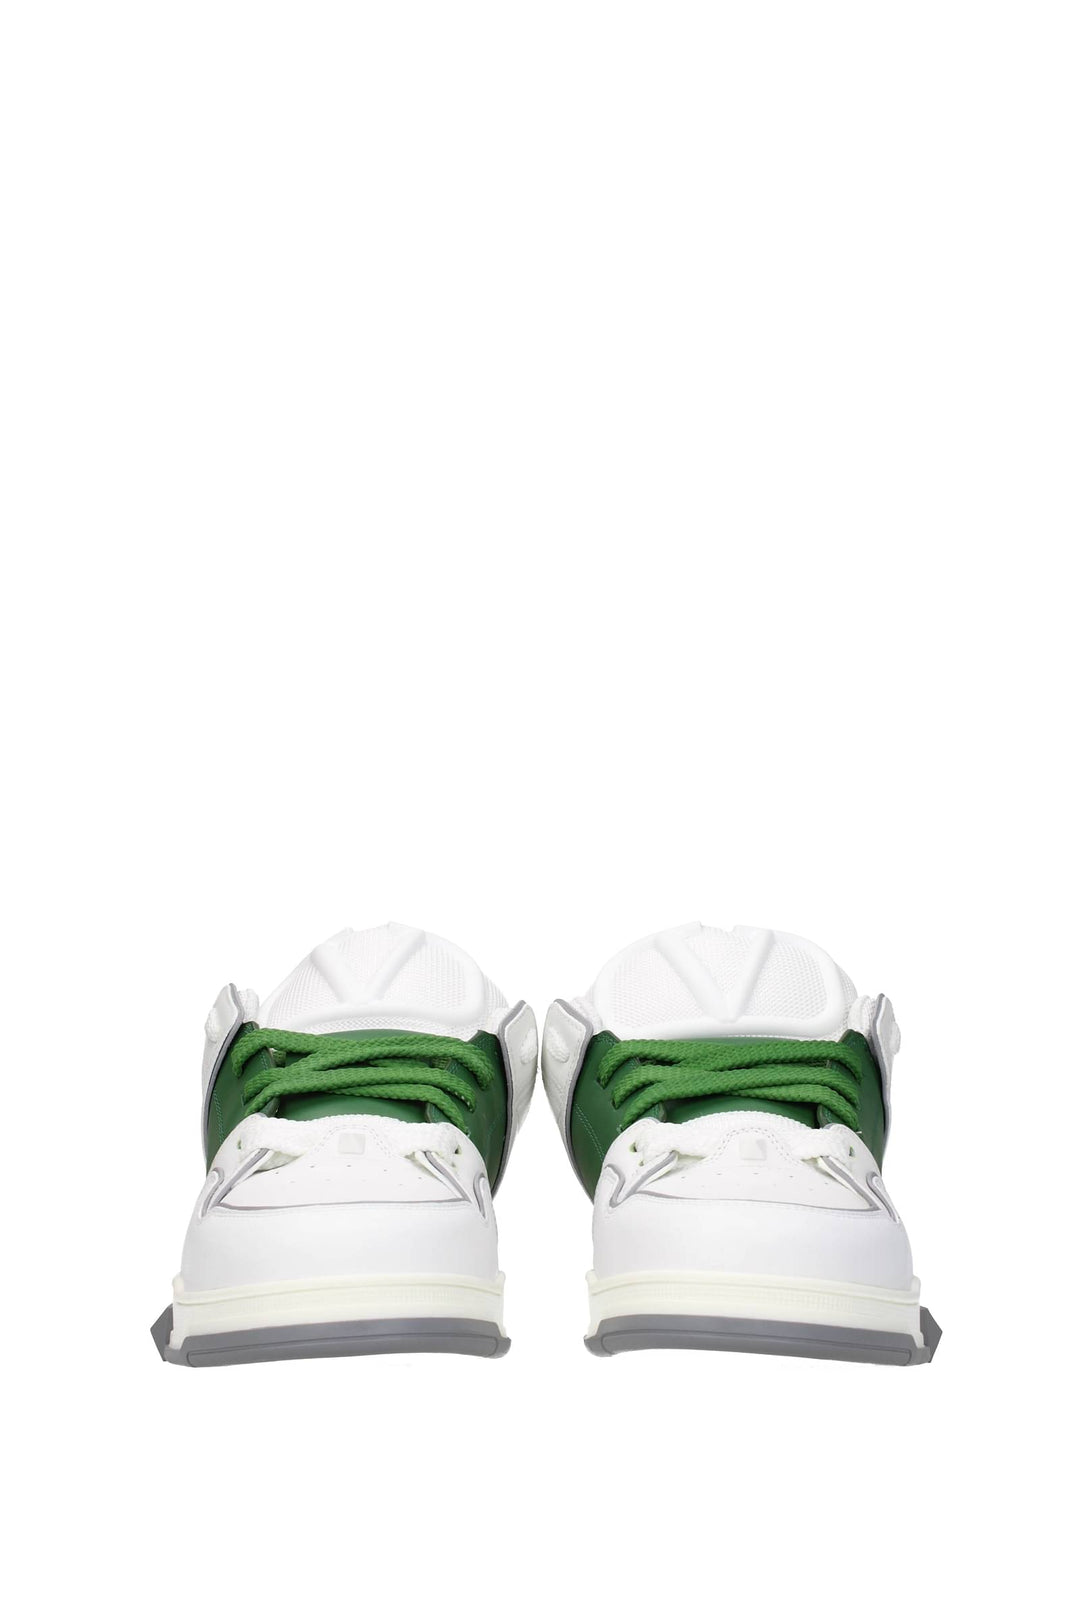 Sneakers Open Skate Pelle Bianco Verde - Valentino Garavani - Uomo